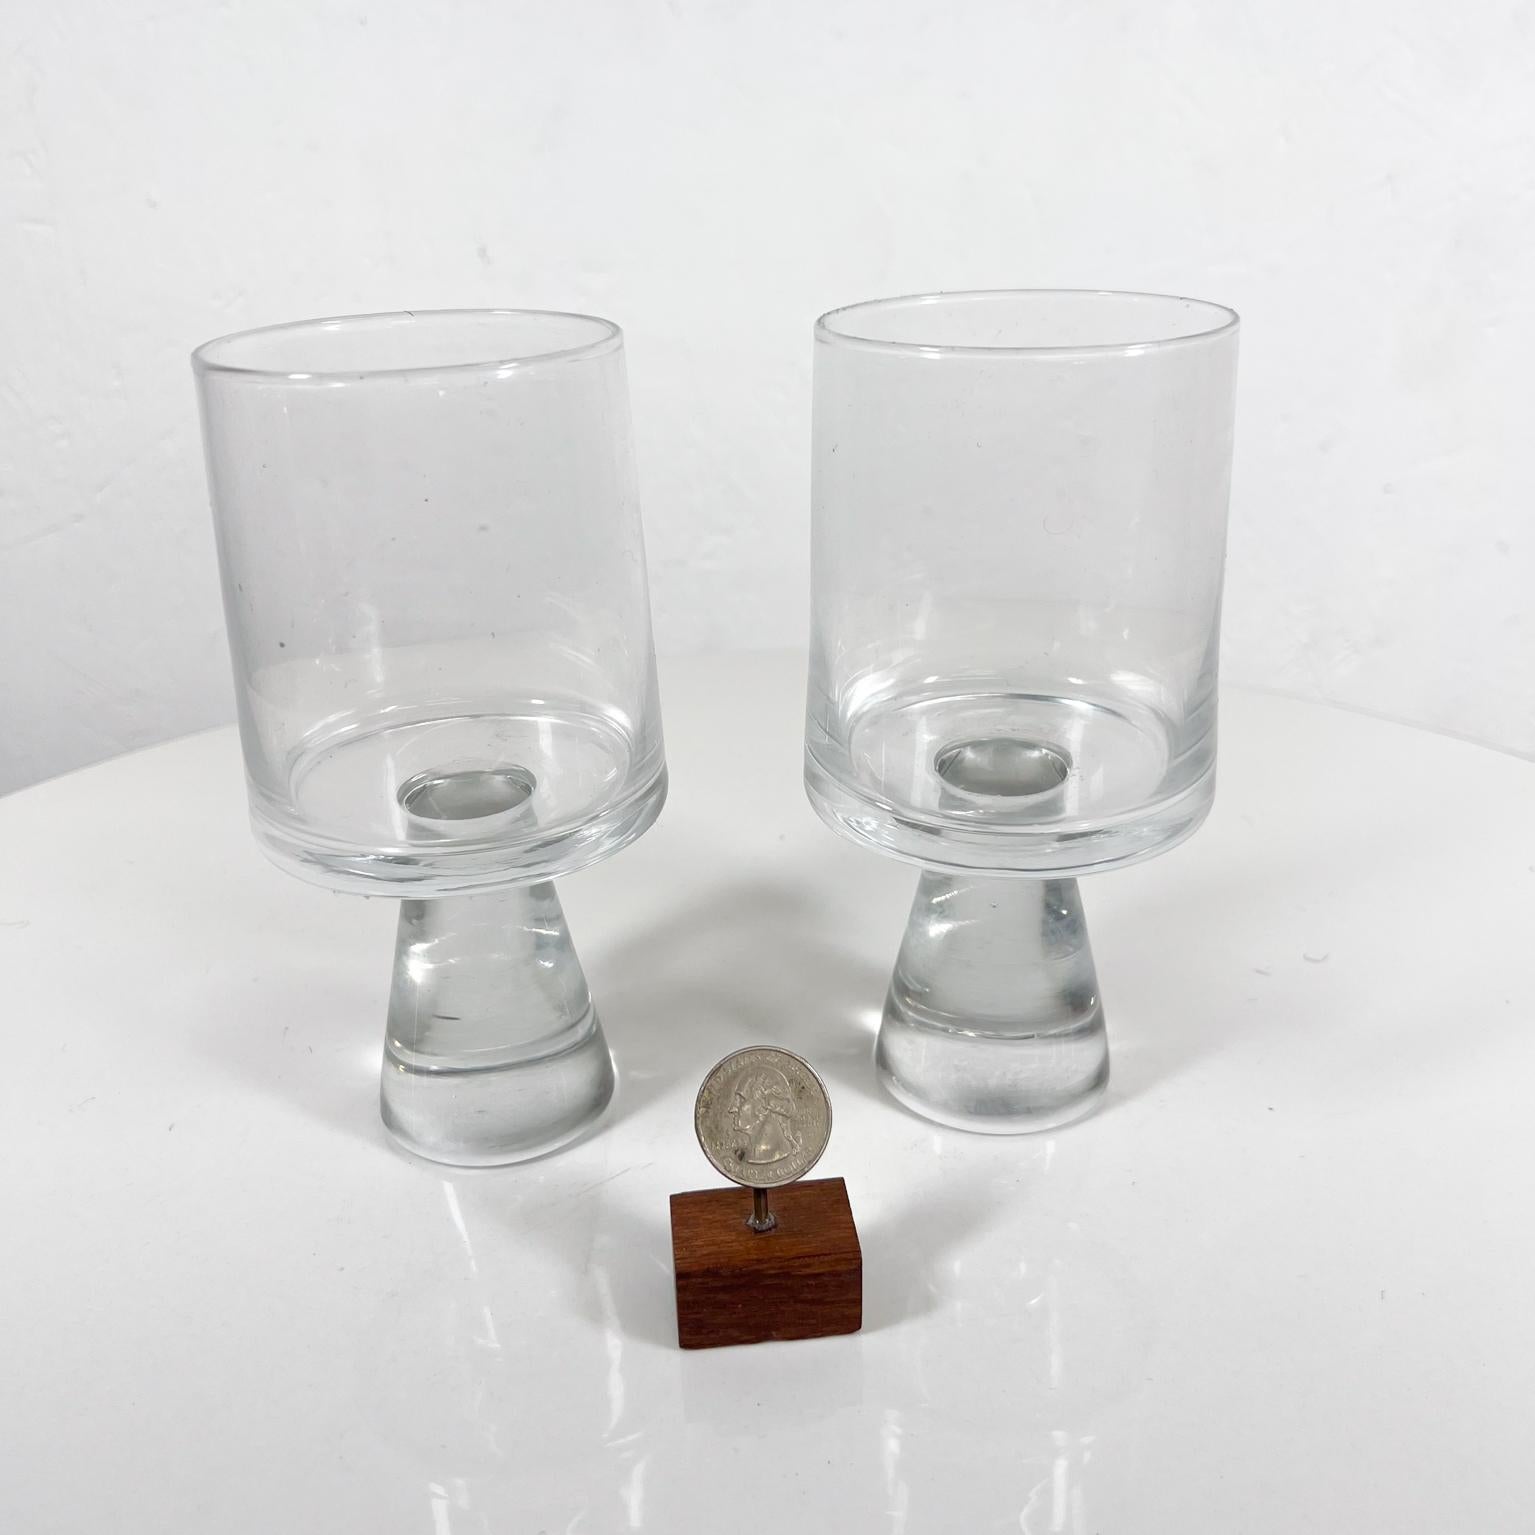 1970er Mod Satz von zwei Wasserkelch Kristallgläser dicken Stiel
Vintage Antique Crystal Cut Beautiful Design Glas Wasser Kelch Becher
3 Durchmesser x 6 h
Preowned vintage, siehe Bilder.


